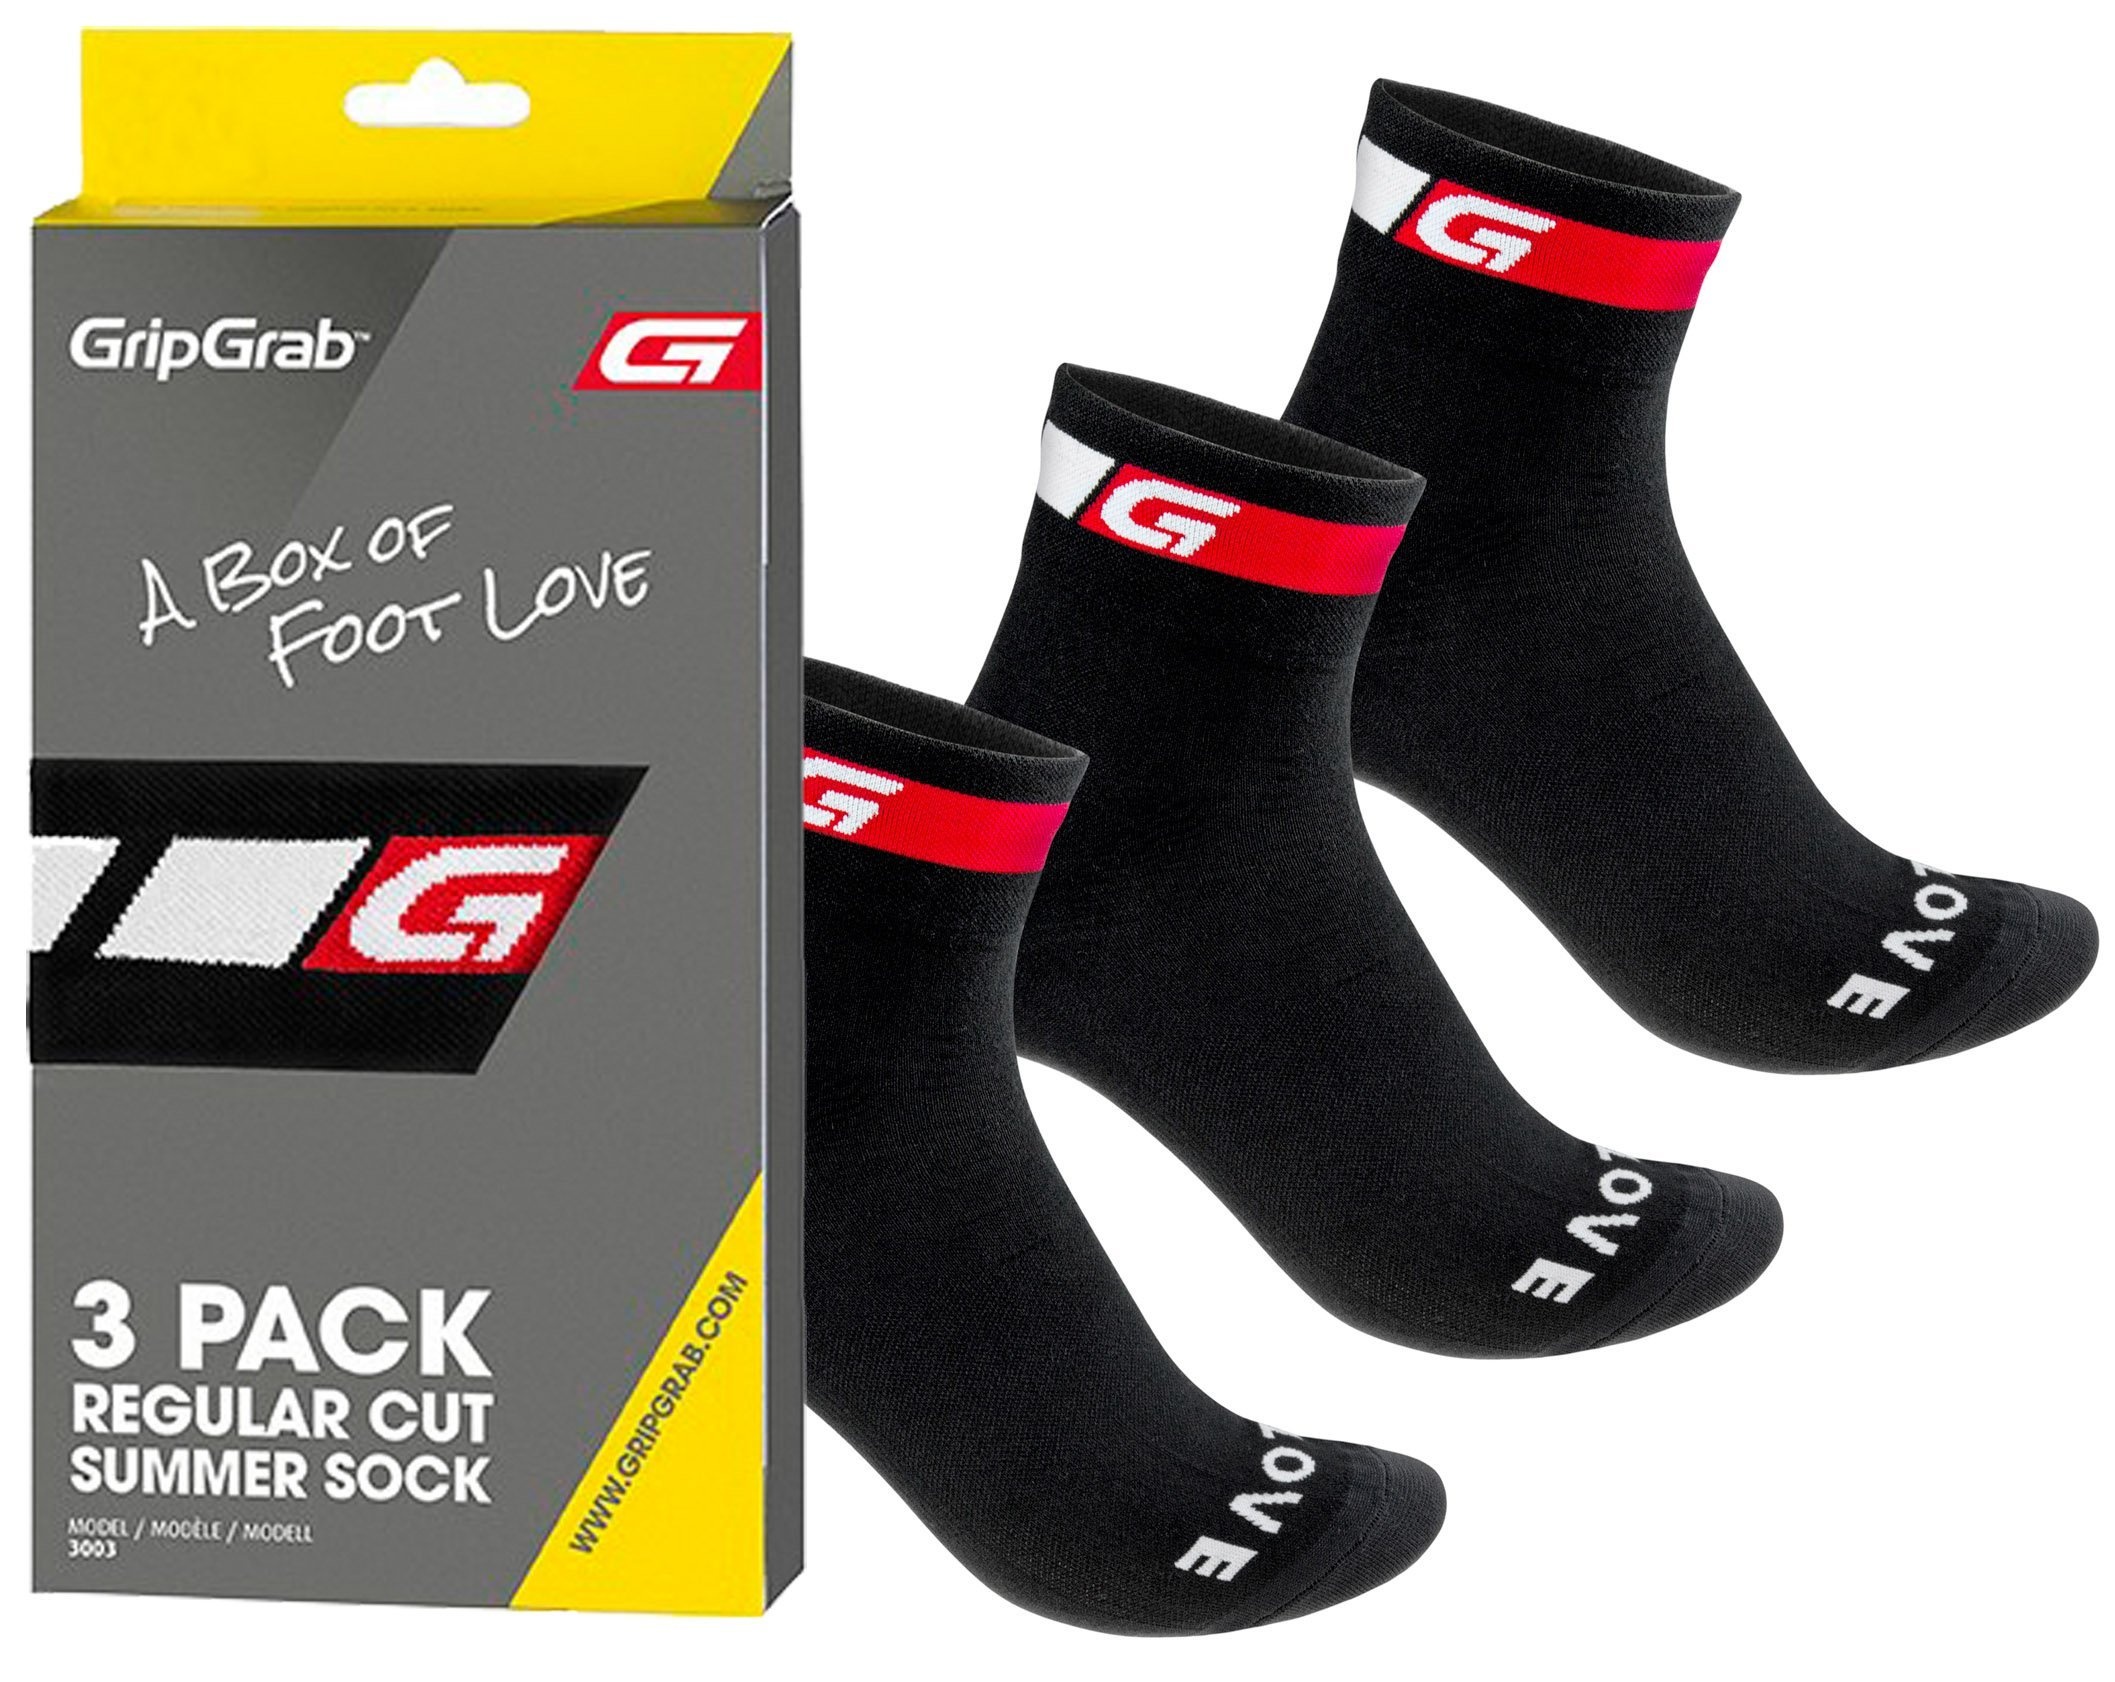 Beklædning - Sokker - GripGrab 3-Pack Regular Cut Summer Sock, sort